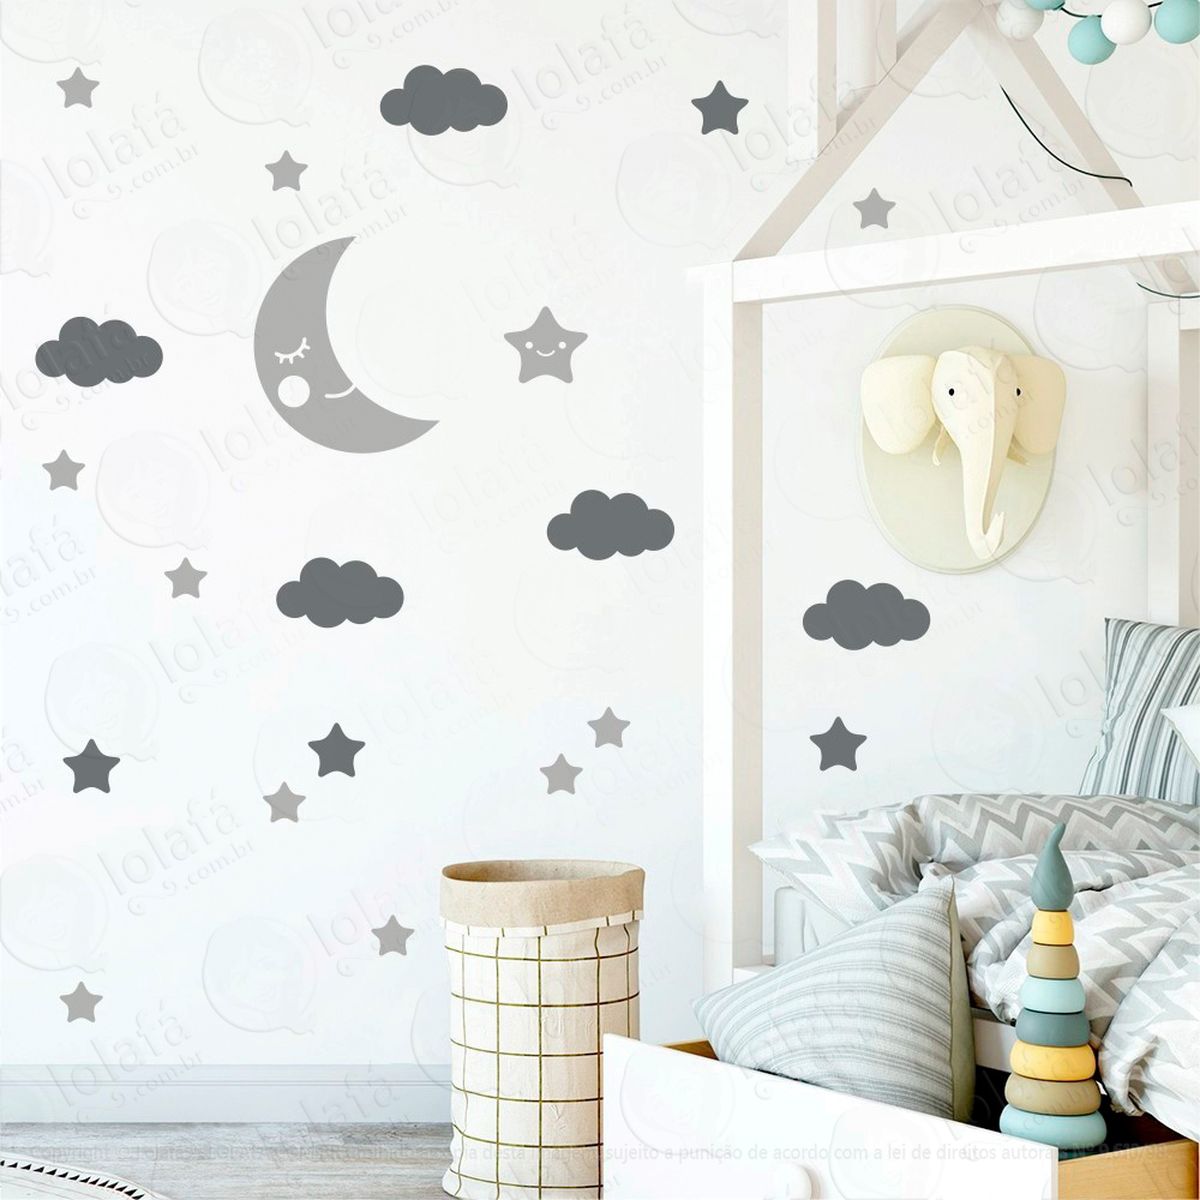 adesivos lua nuvens e estrelas 62 peças adesivos para quarto de bebê infantil - mod:622